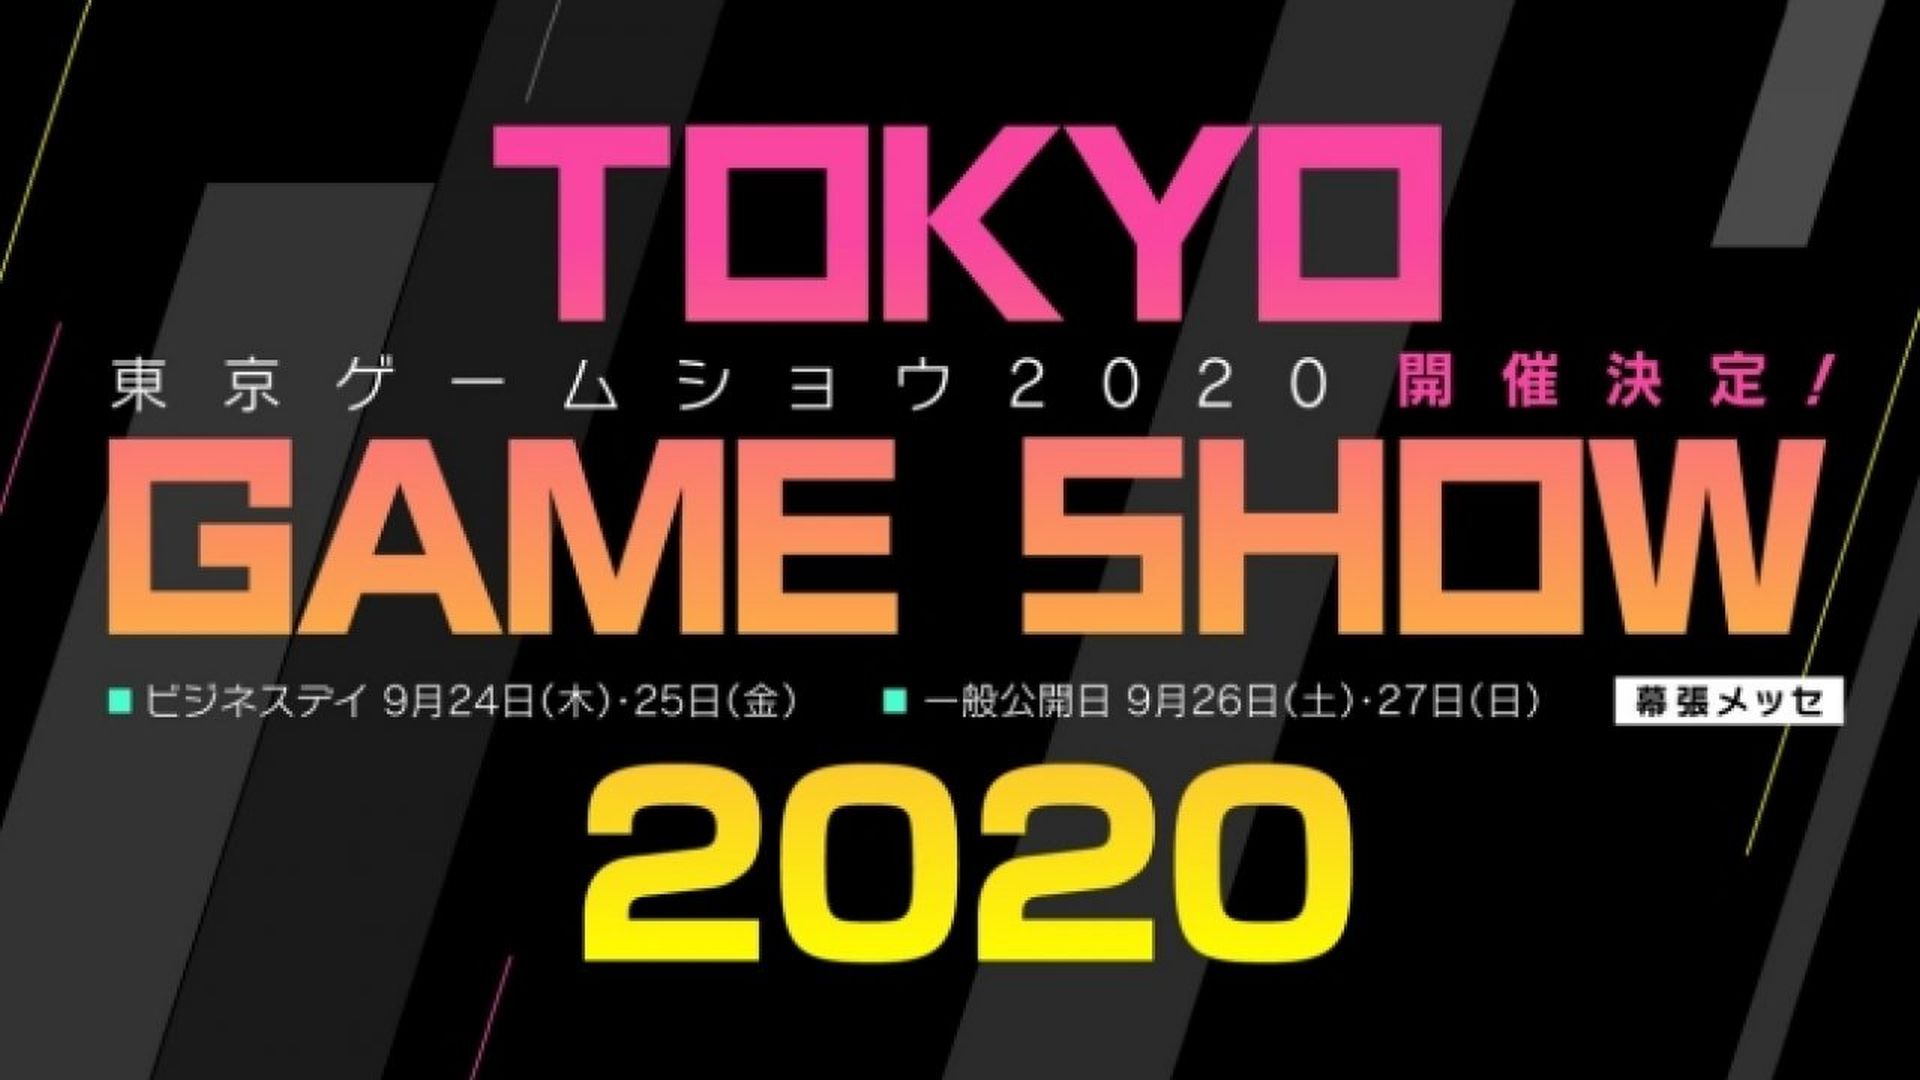 Намоишгоҳи Токио 2020